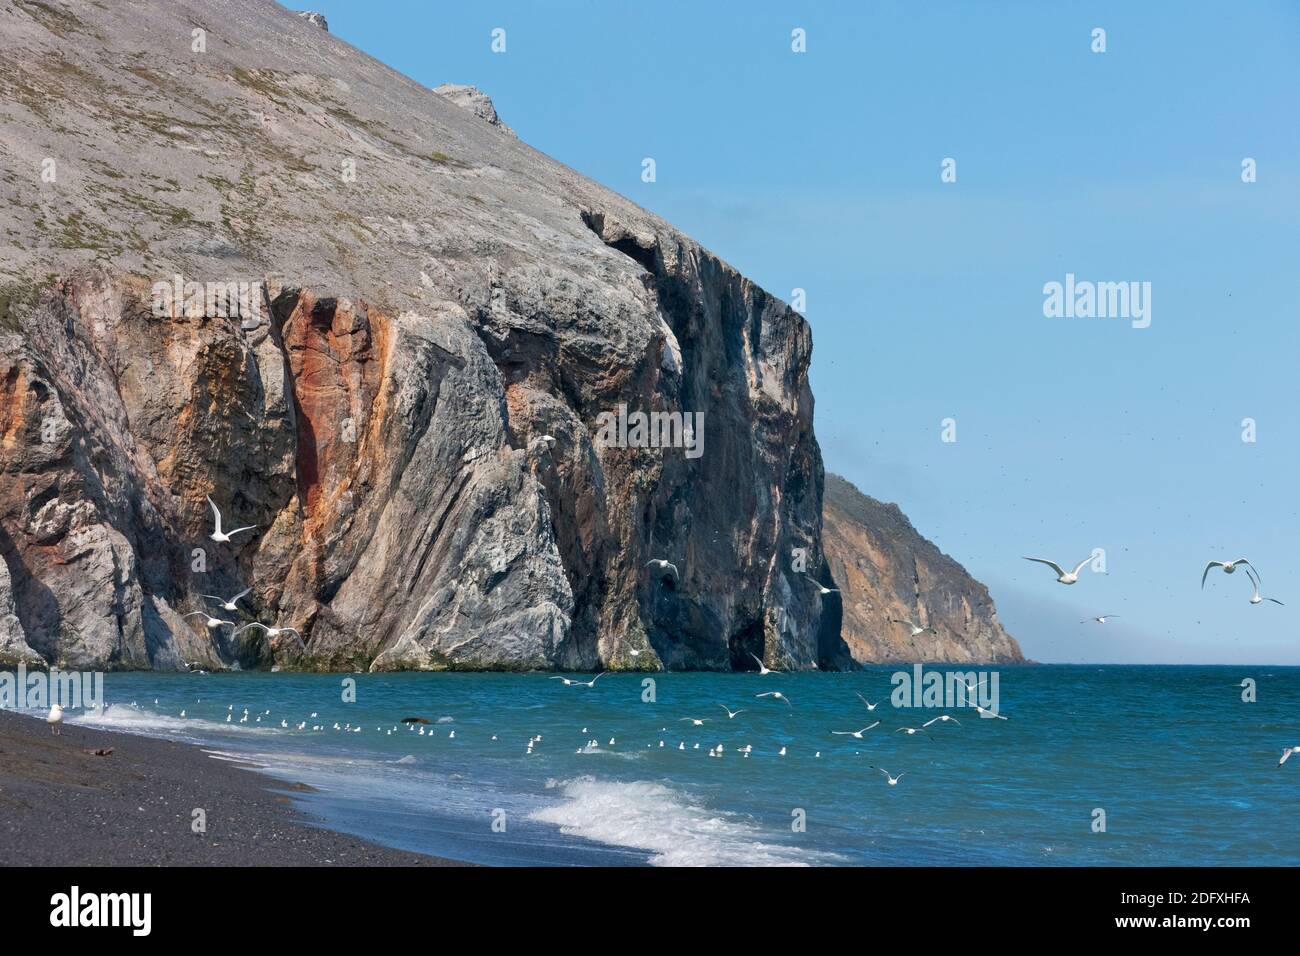 Felsigen Klippen und Strand, Kap Dezhnev, östlichste Ecke von Eurasia, russischen Fernen Osten Stockfoto